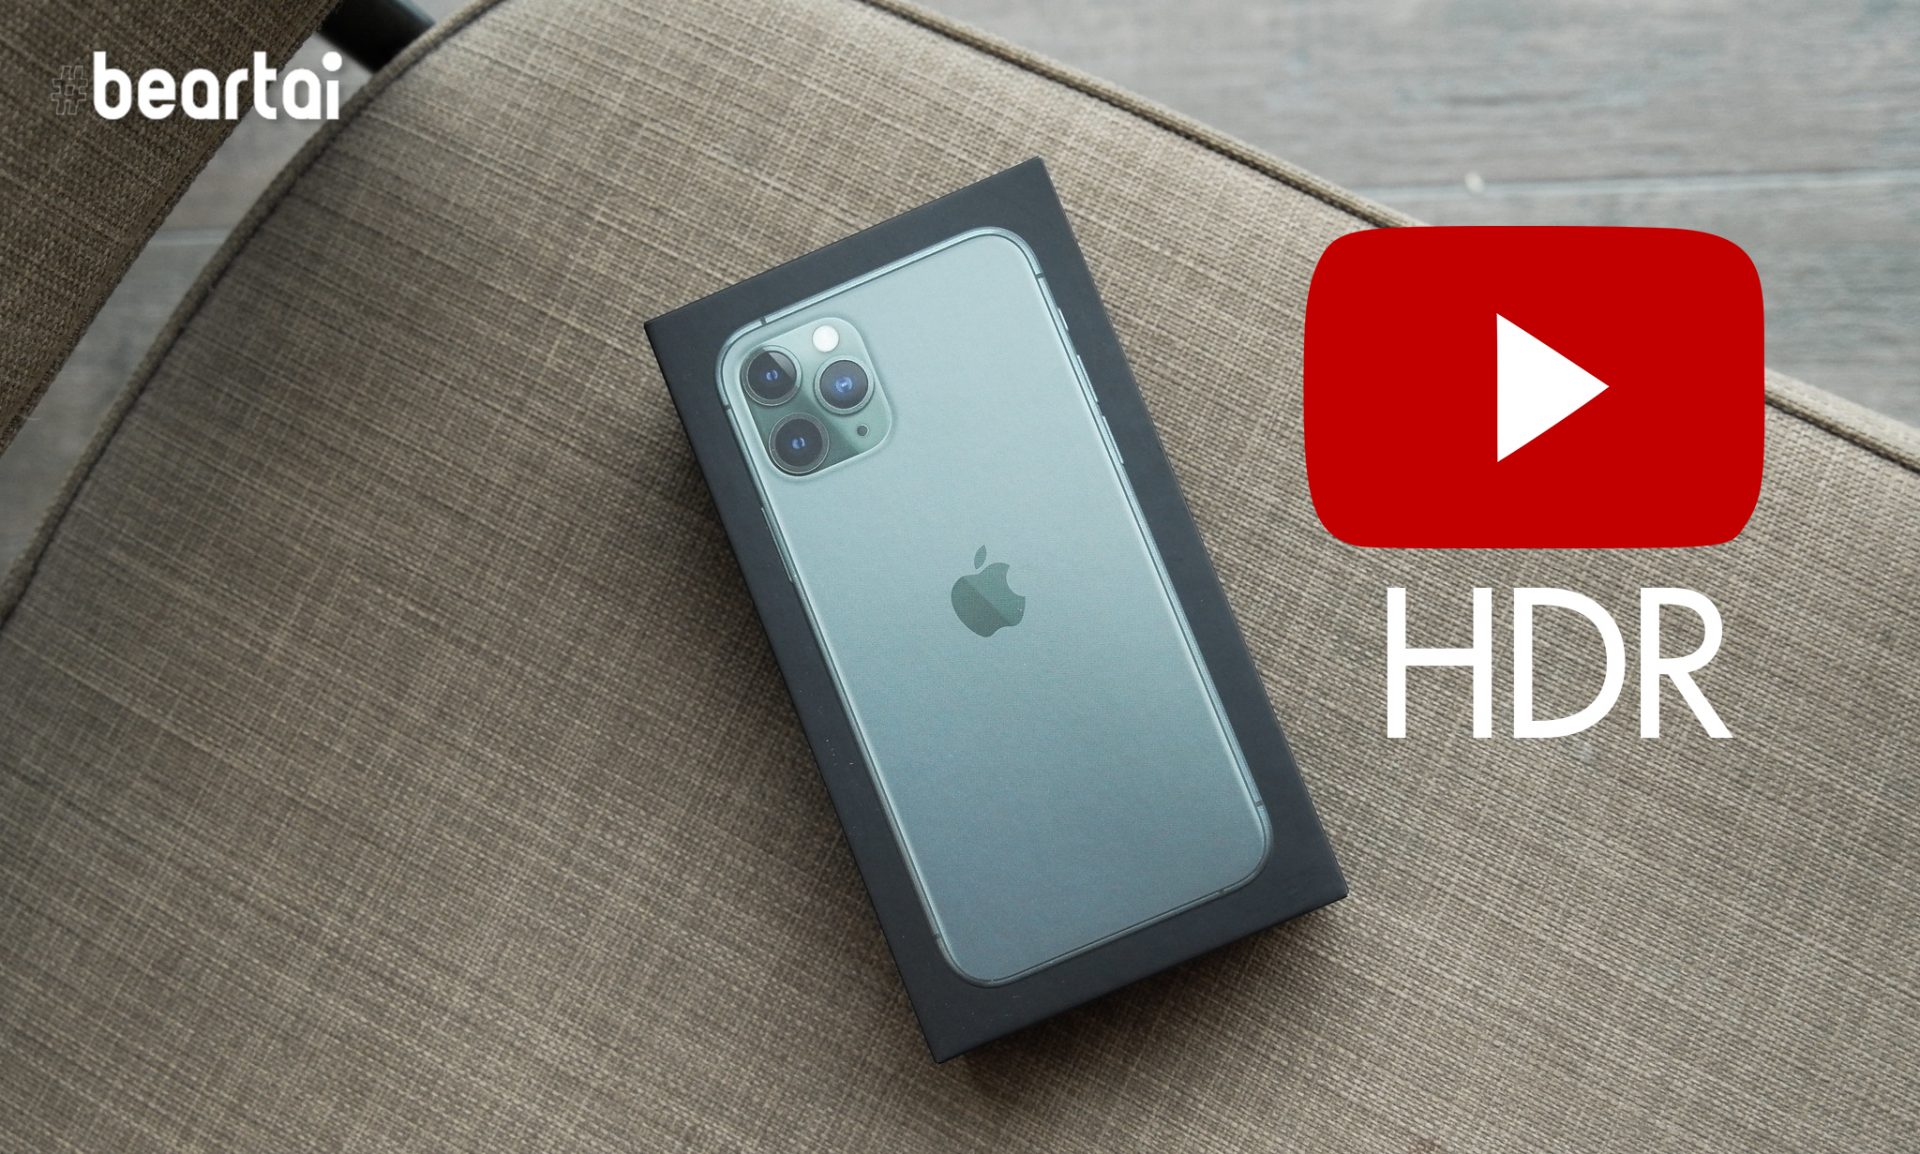 แอป YouTube เพิ่มวิดีโอคุณภาพ HDR สำหรับ iPhone 11 Pro และ iPhone 11 Pro Max